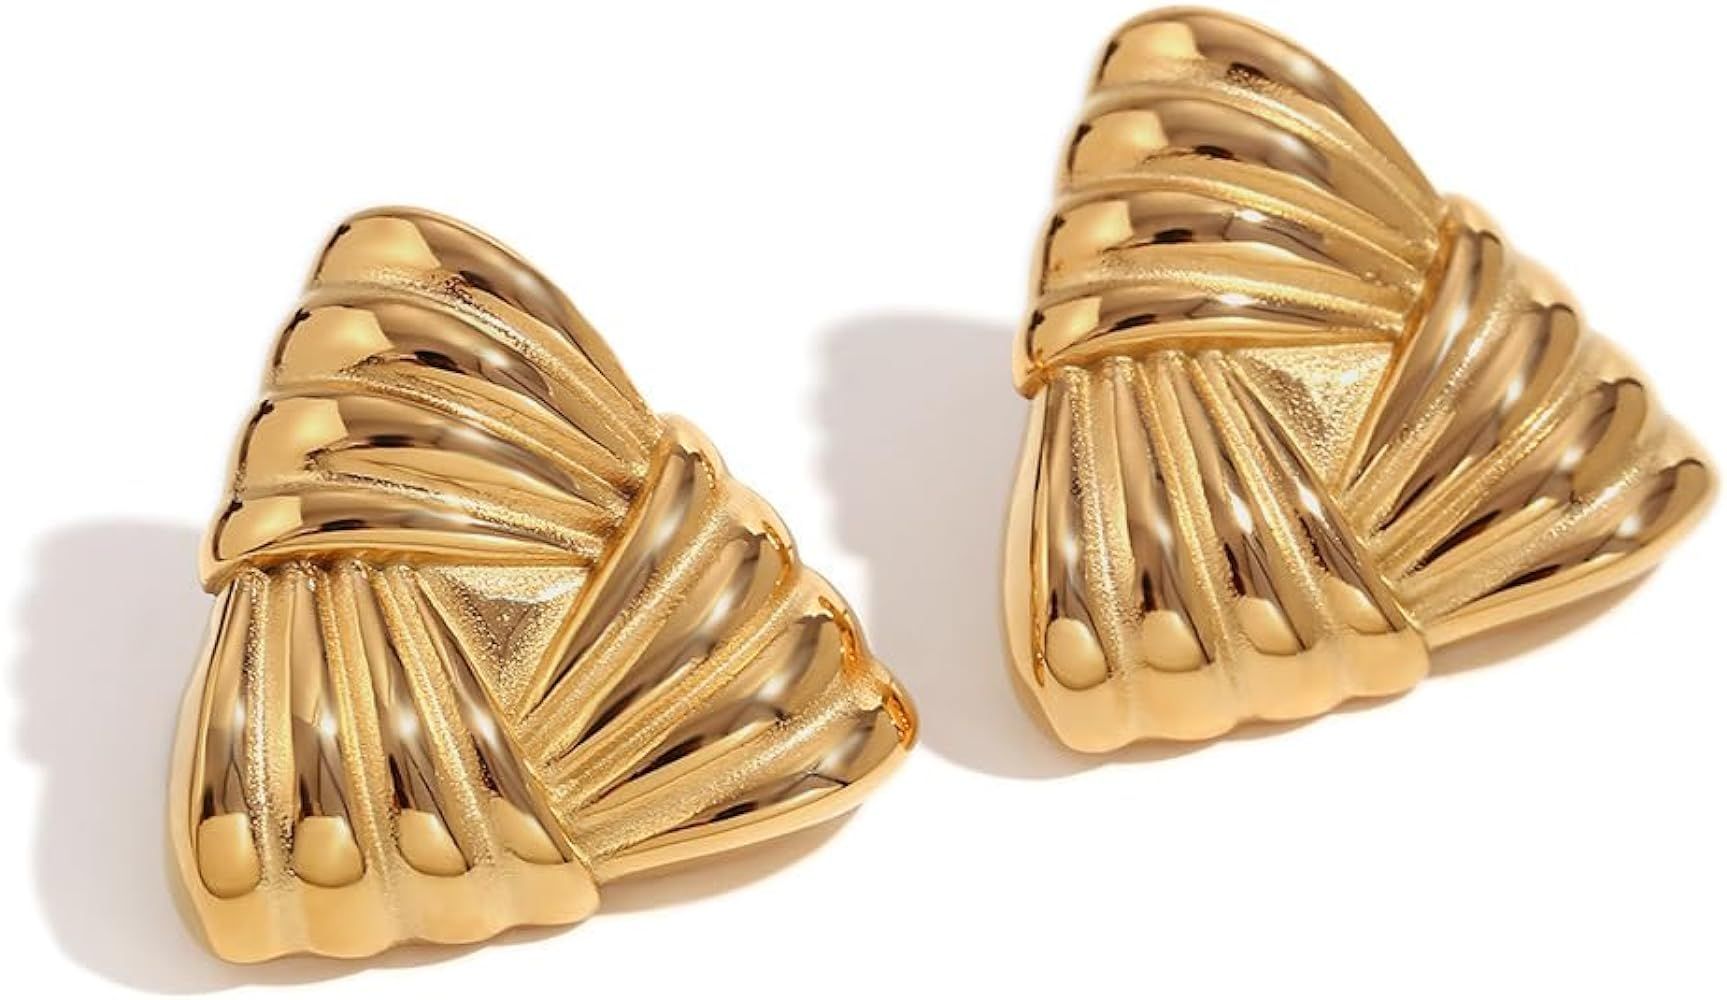 HINSD Striped 18k Gold Earrings Flow Teardrop/Triangle/Petal Shaped Glossy Earrings, Stainless St... | Amazon (US)